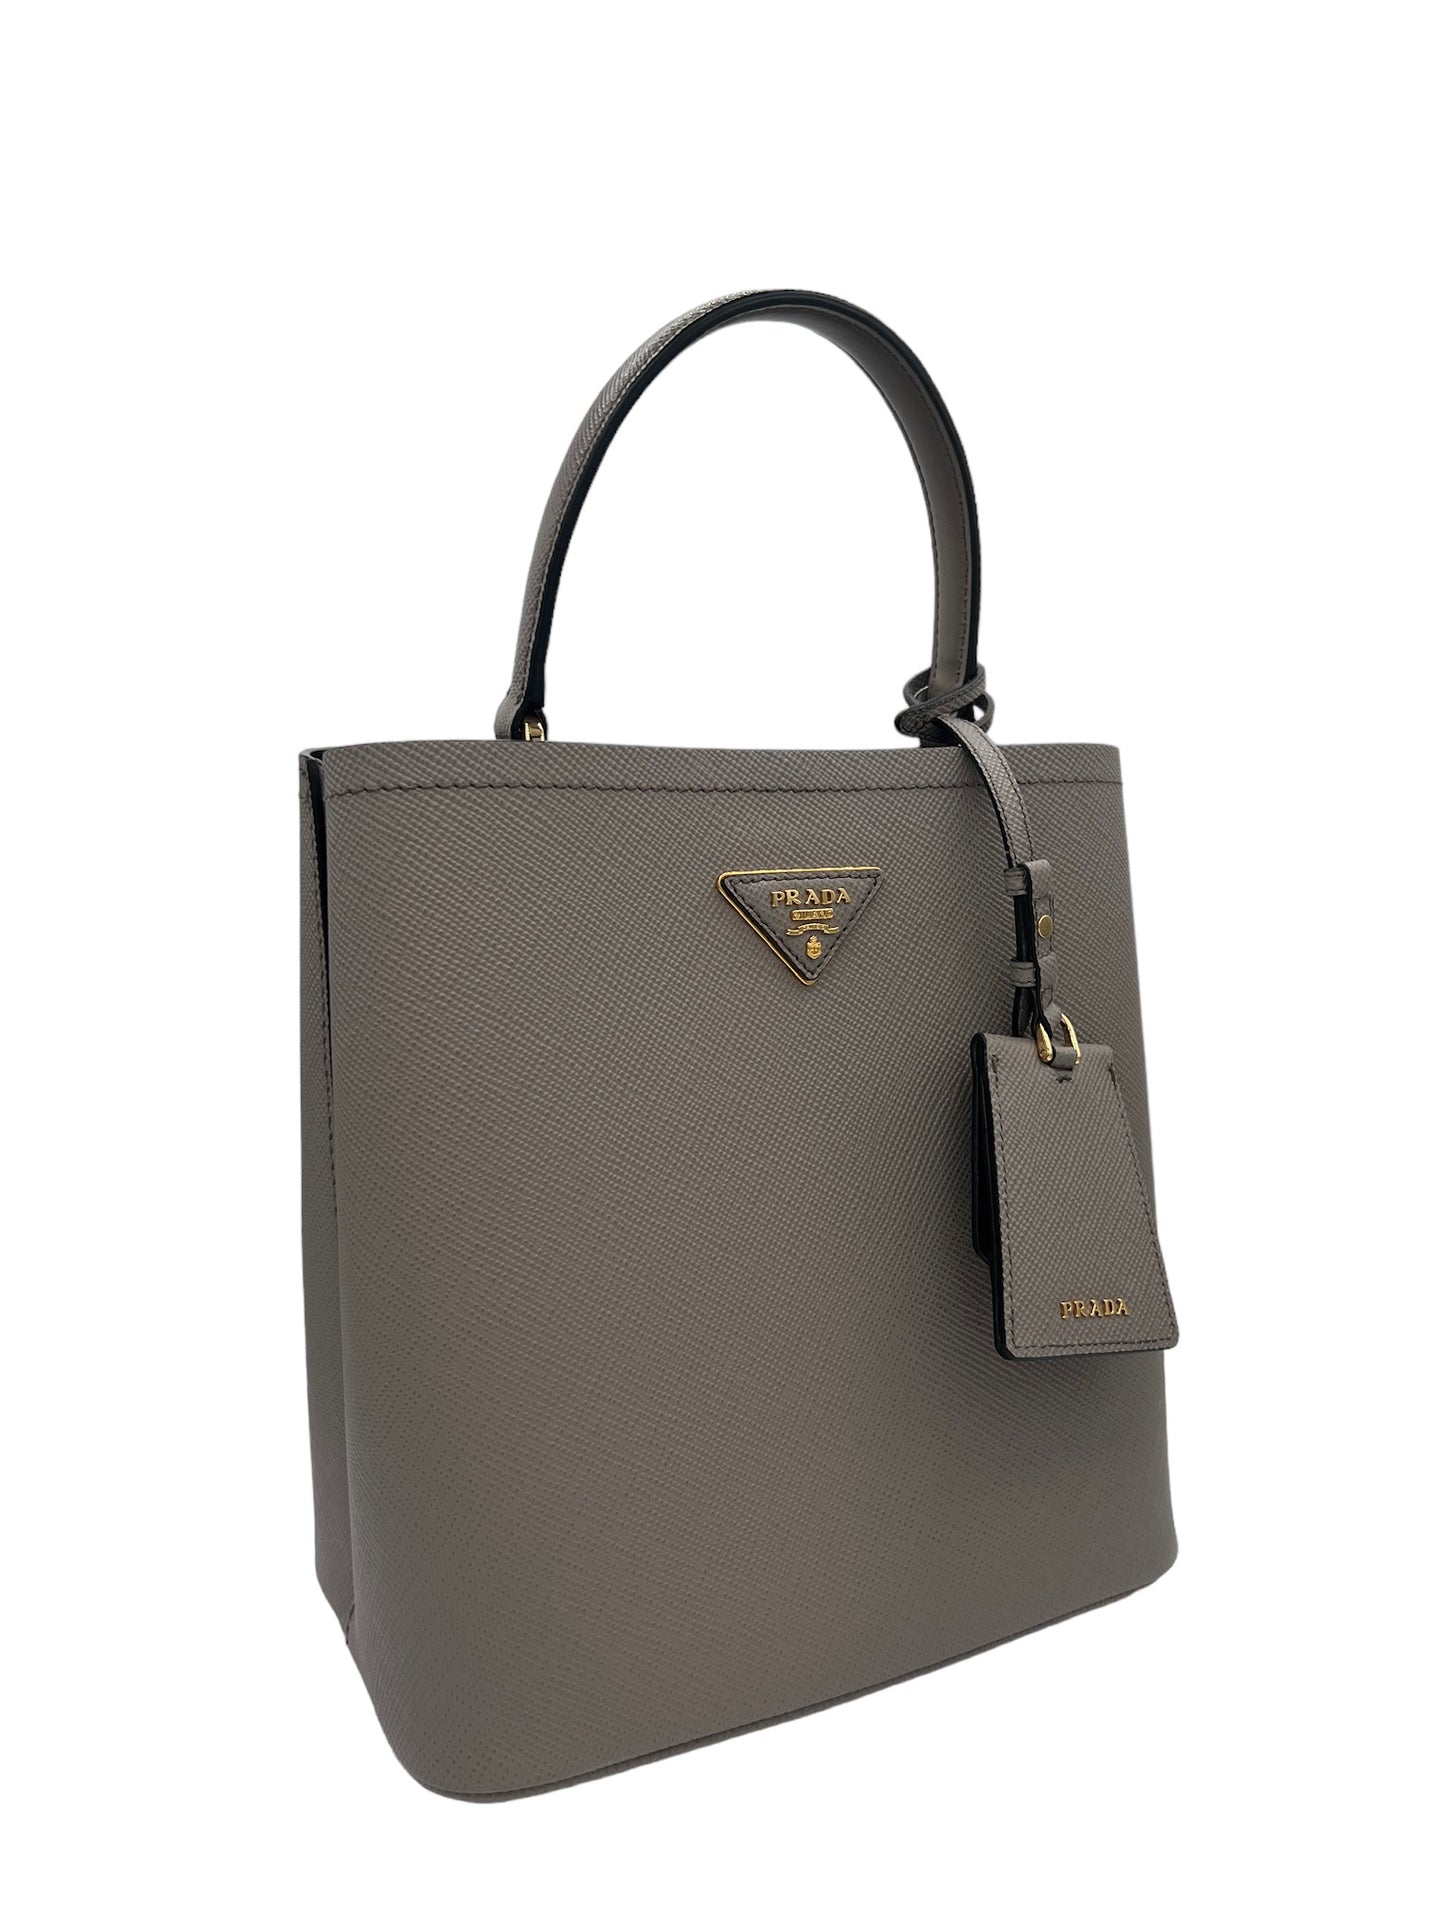 PRADA - Panier Gray Saffiano Leather Handbag